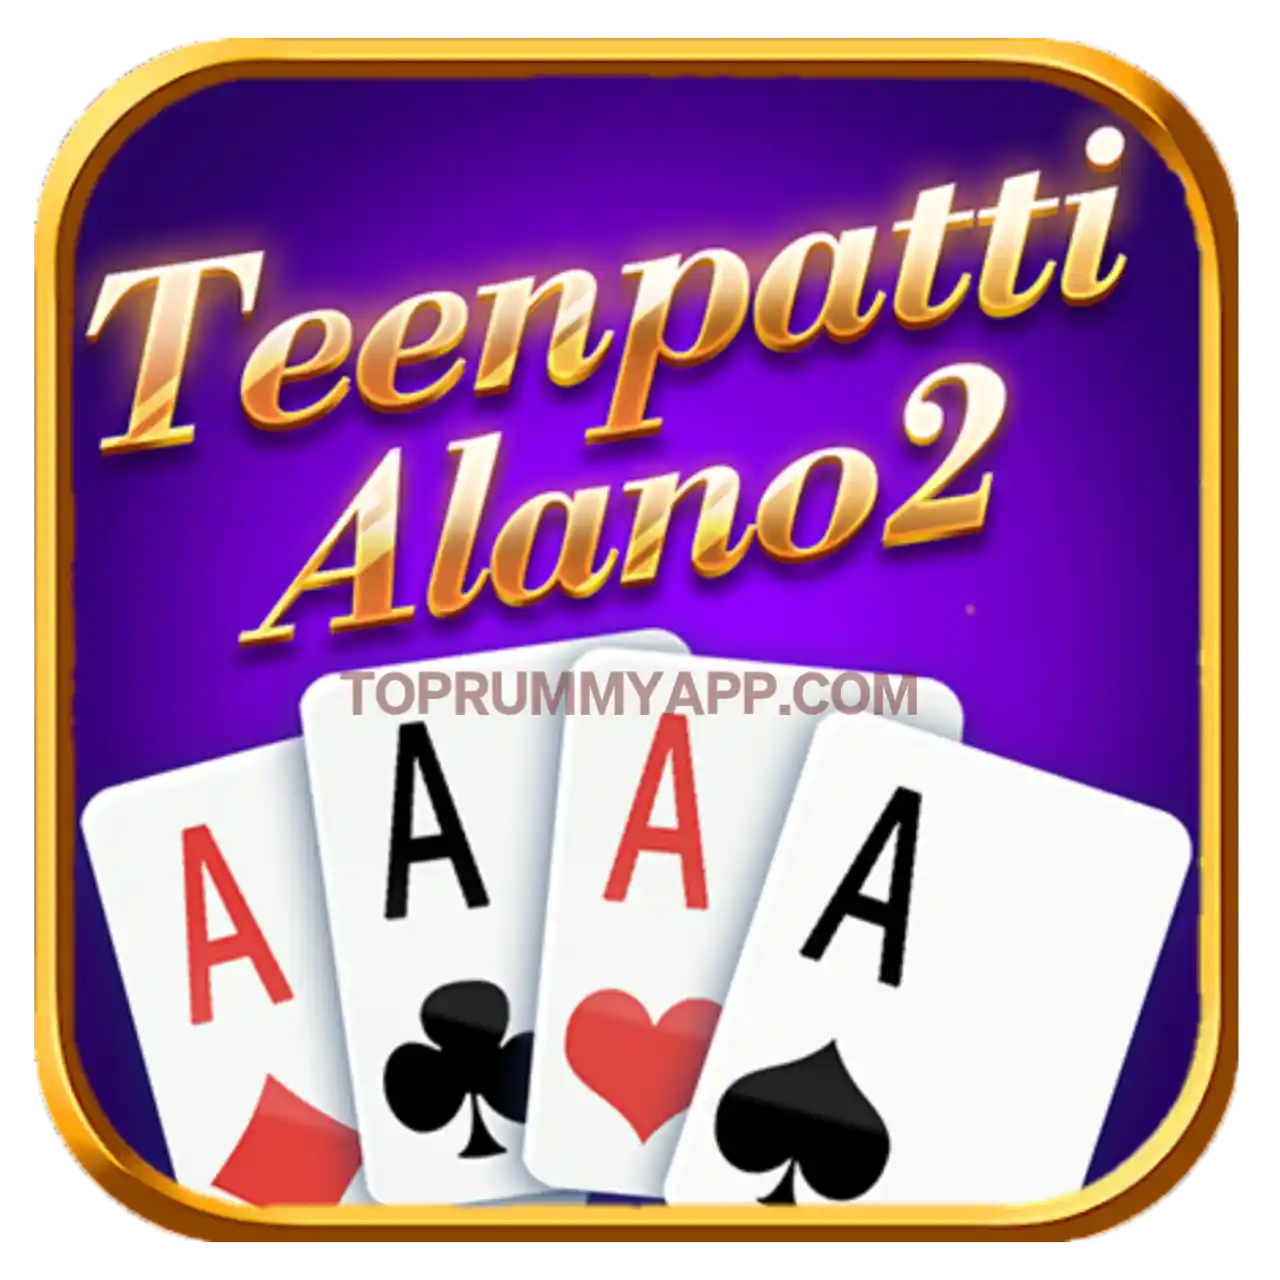 Teen Patti Alano App Download All Teen Patti App List ₹41 Bonus